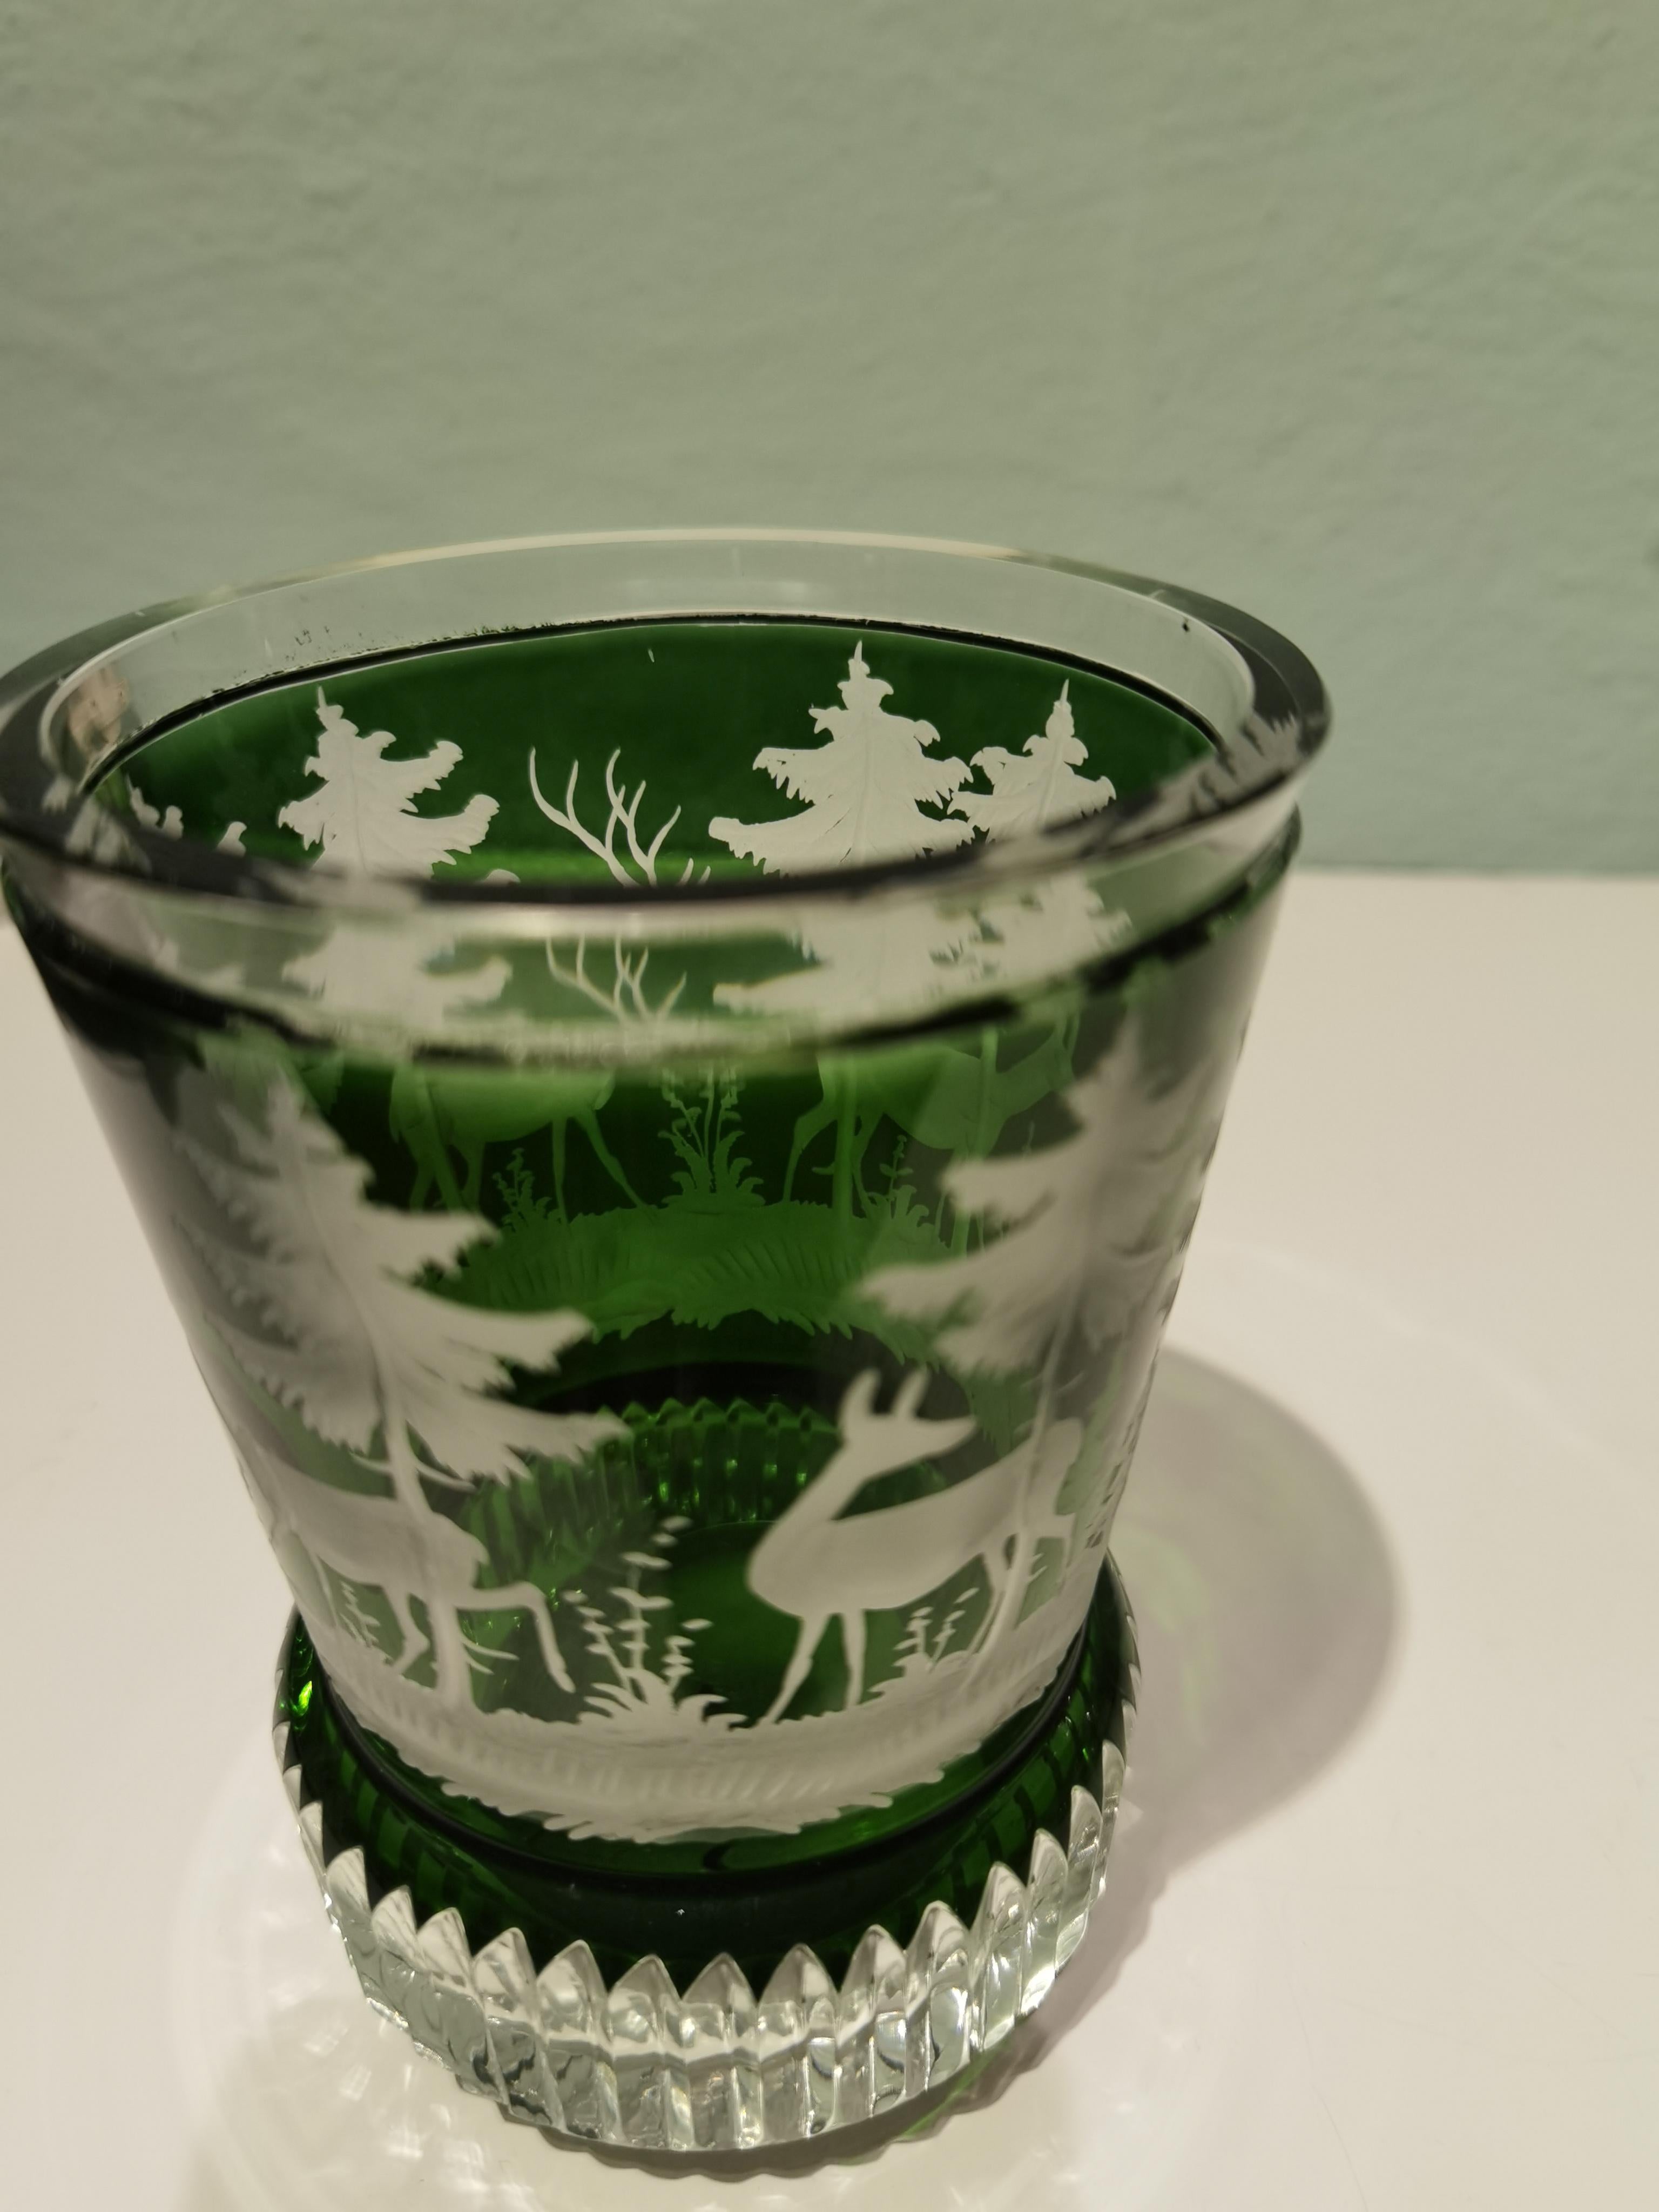 Handgeblasene Kristalllaterne in grünem Glas aus Bayern. Das Dekor ist mundgeblasen und freihändig von Glaskünstlern rundherum mit einer Jagdszene mit Bäumen rundherum im Stil des Schwarzwaldes graviert. Sofina Glas und Porzellan wurde 2013 in